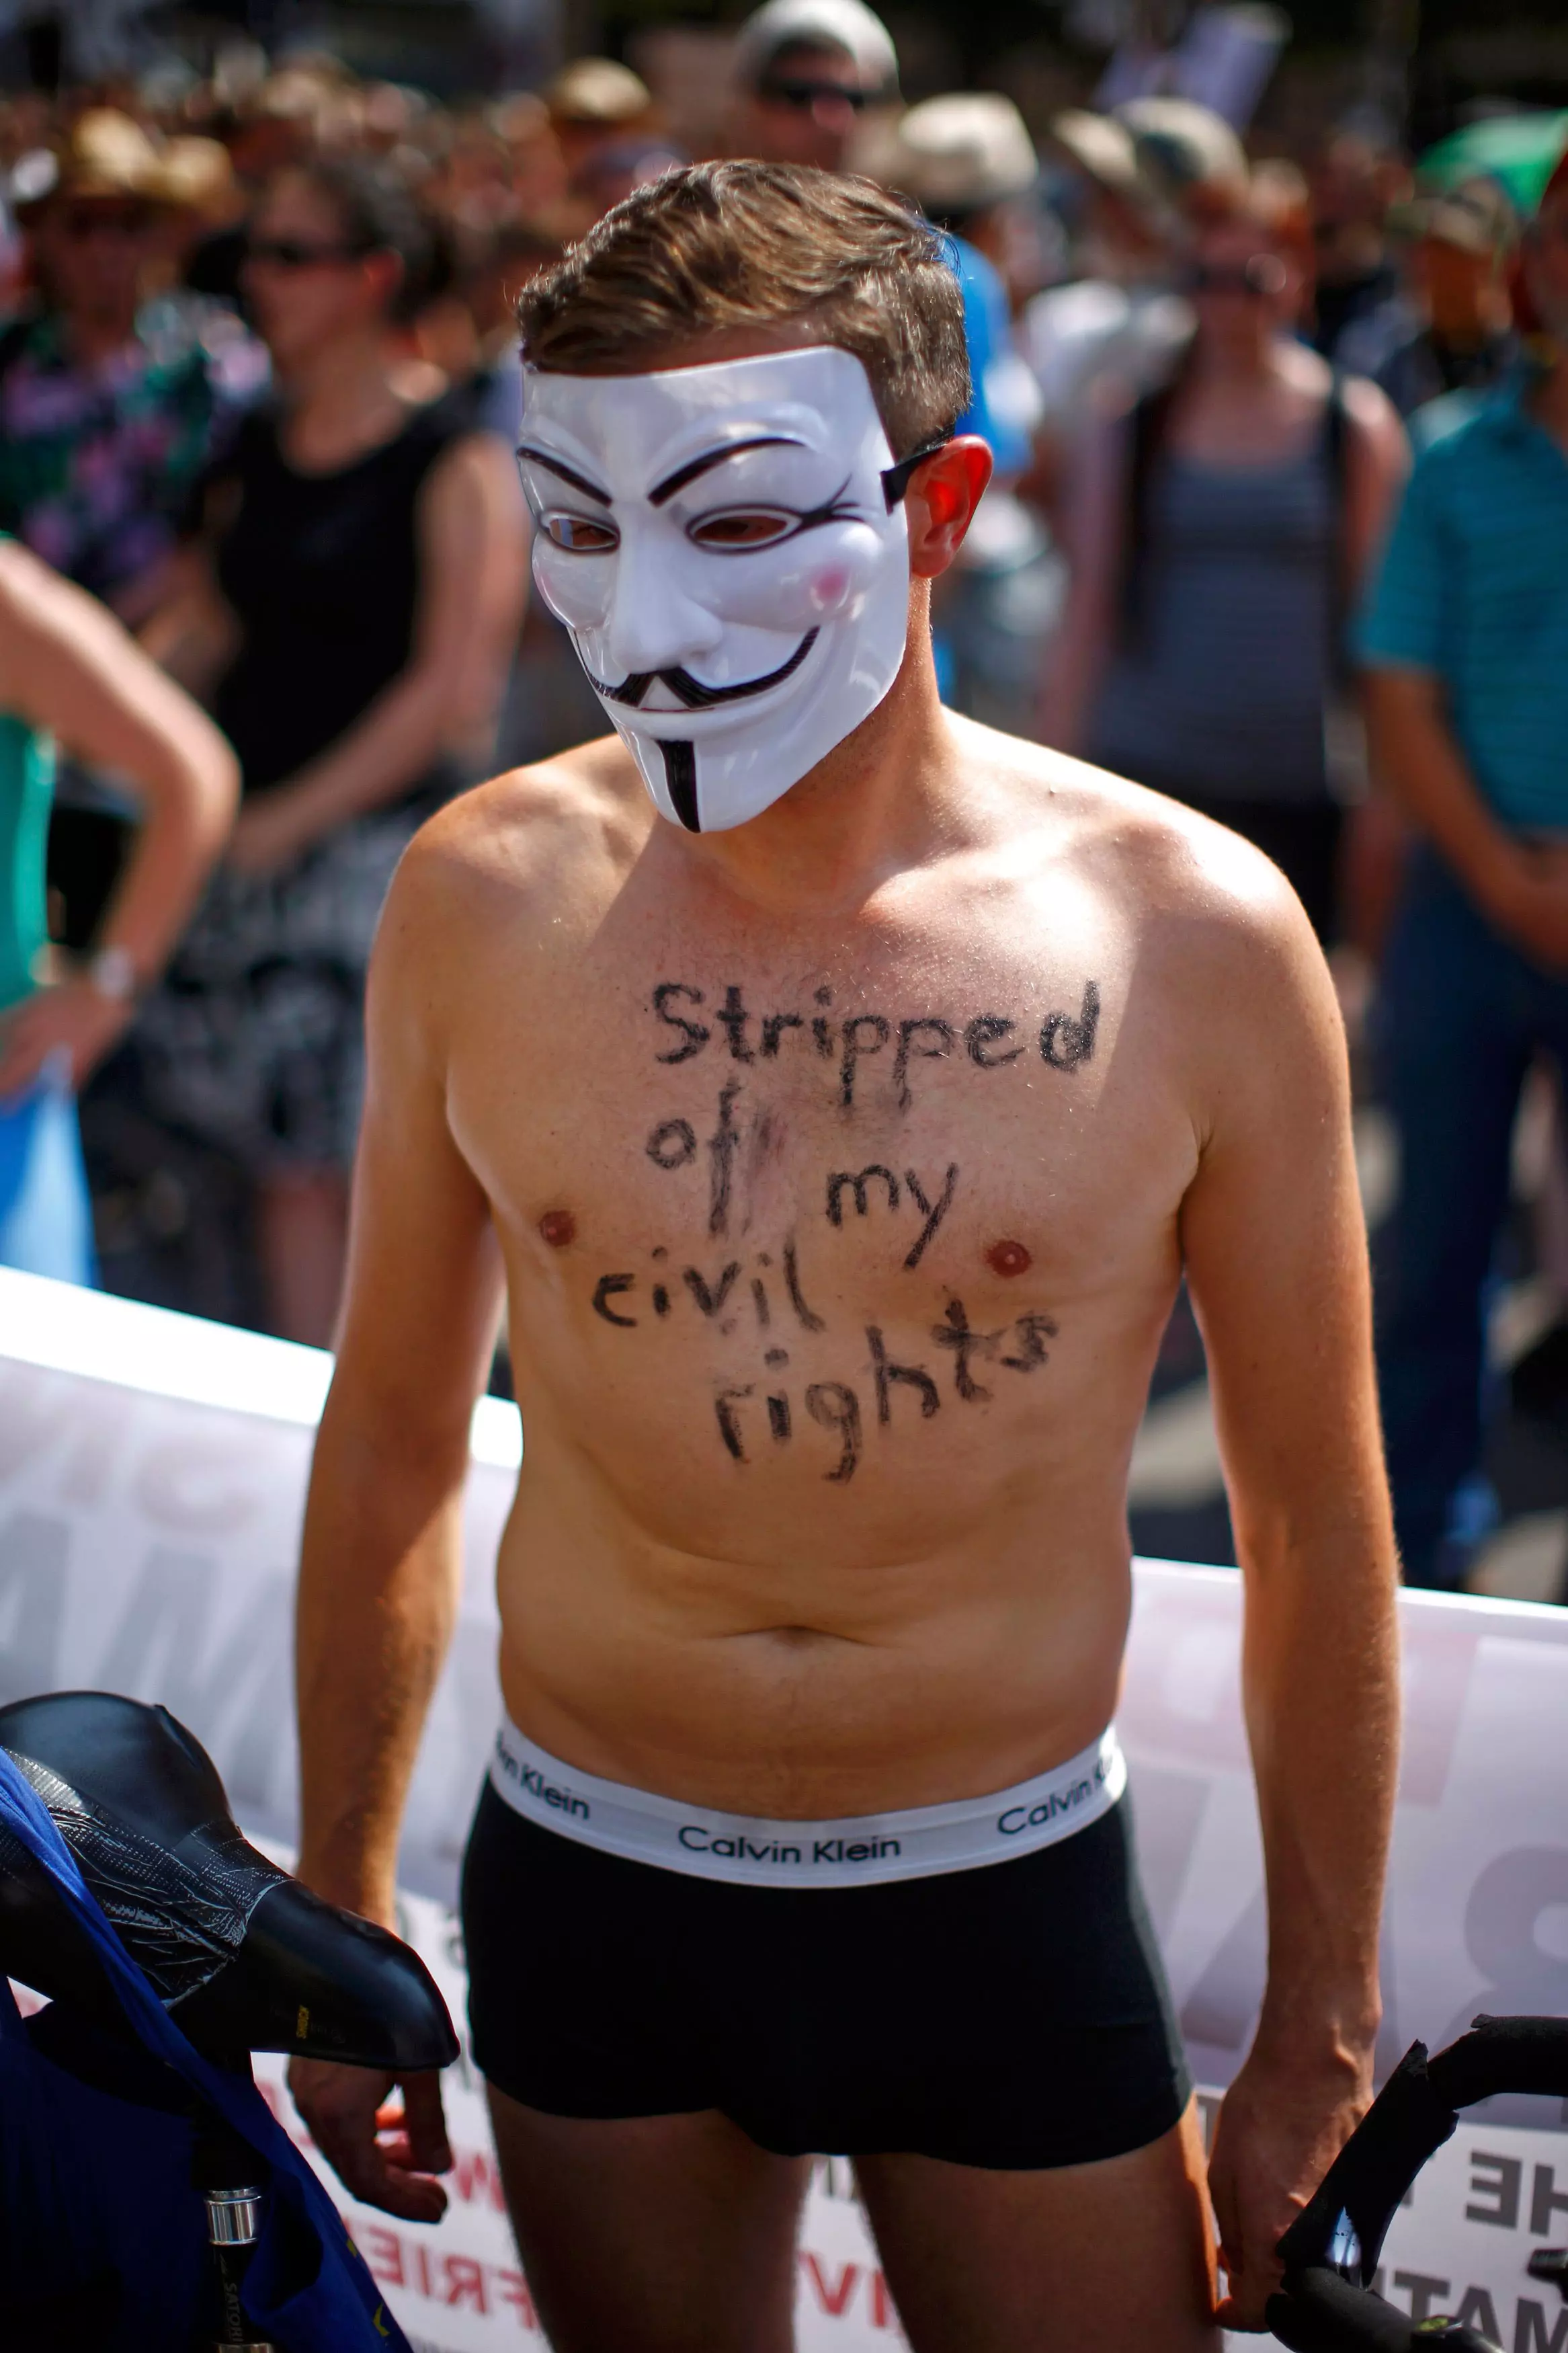 "הופשטתי מזכויות האזרחי שלי". הפגנה למען סנודן בברלין, השבוע